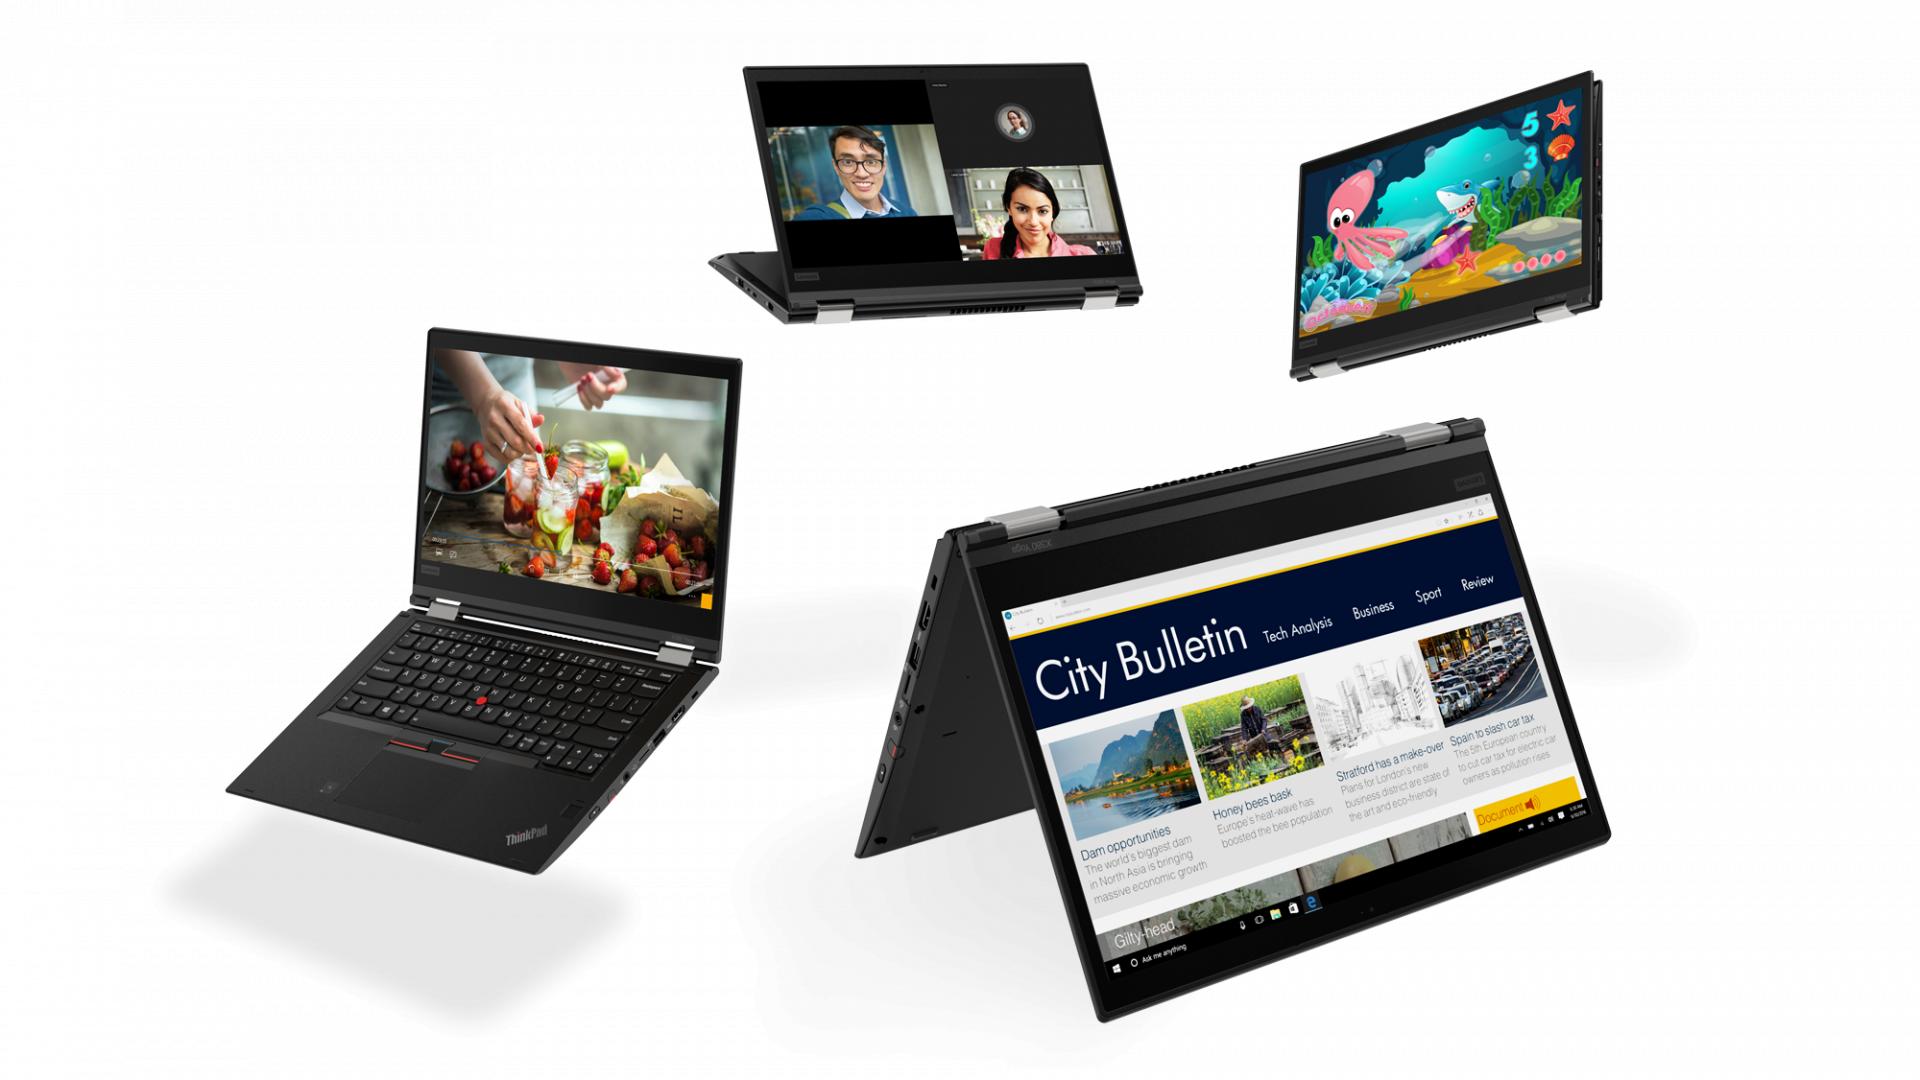 Lenovo освежила семейство Yoga: ThinkPad X1 Yoga, X380 Yoga и L380 Yoga